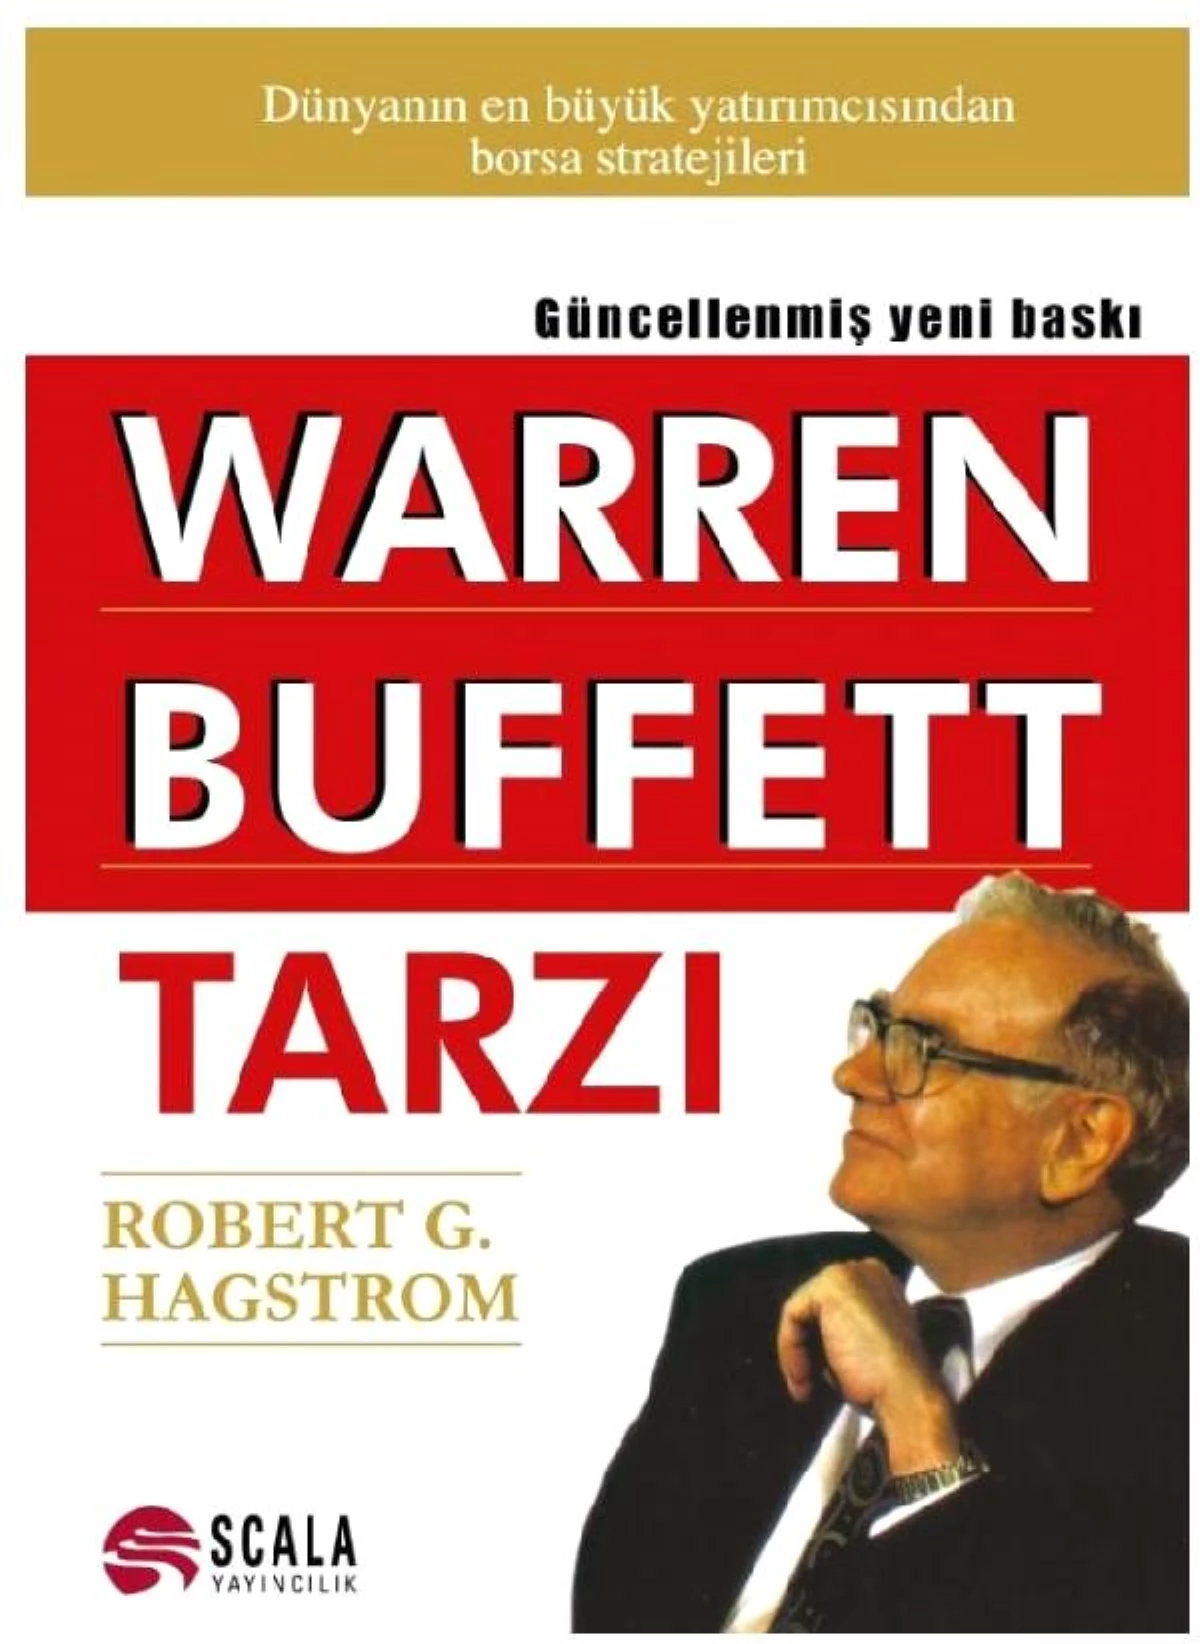 EKONOMİ KİTAPLIĞI - Robert G. Hagstrom\'dan "Warren Buffet Tarzı"